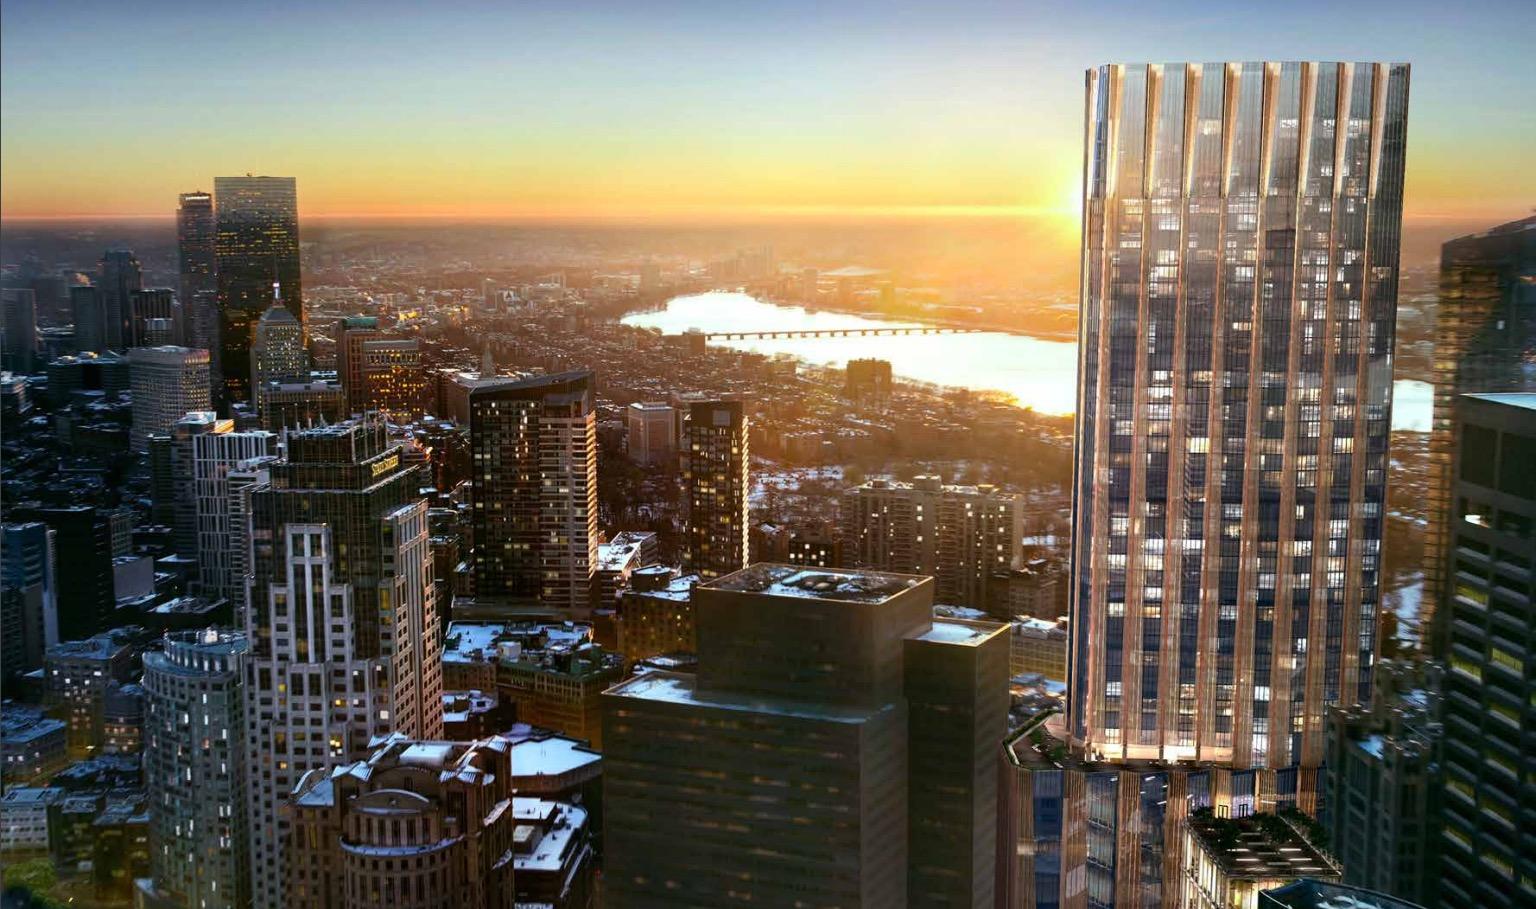 City picks Millennium to develop Winthrop Sq. tower